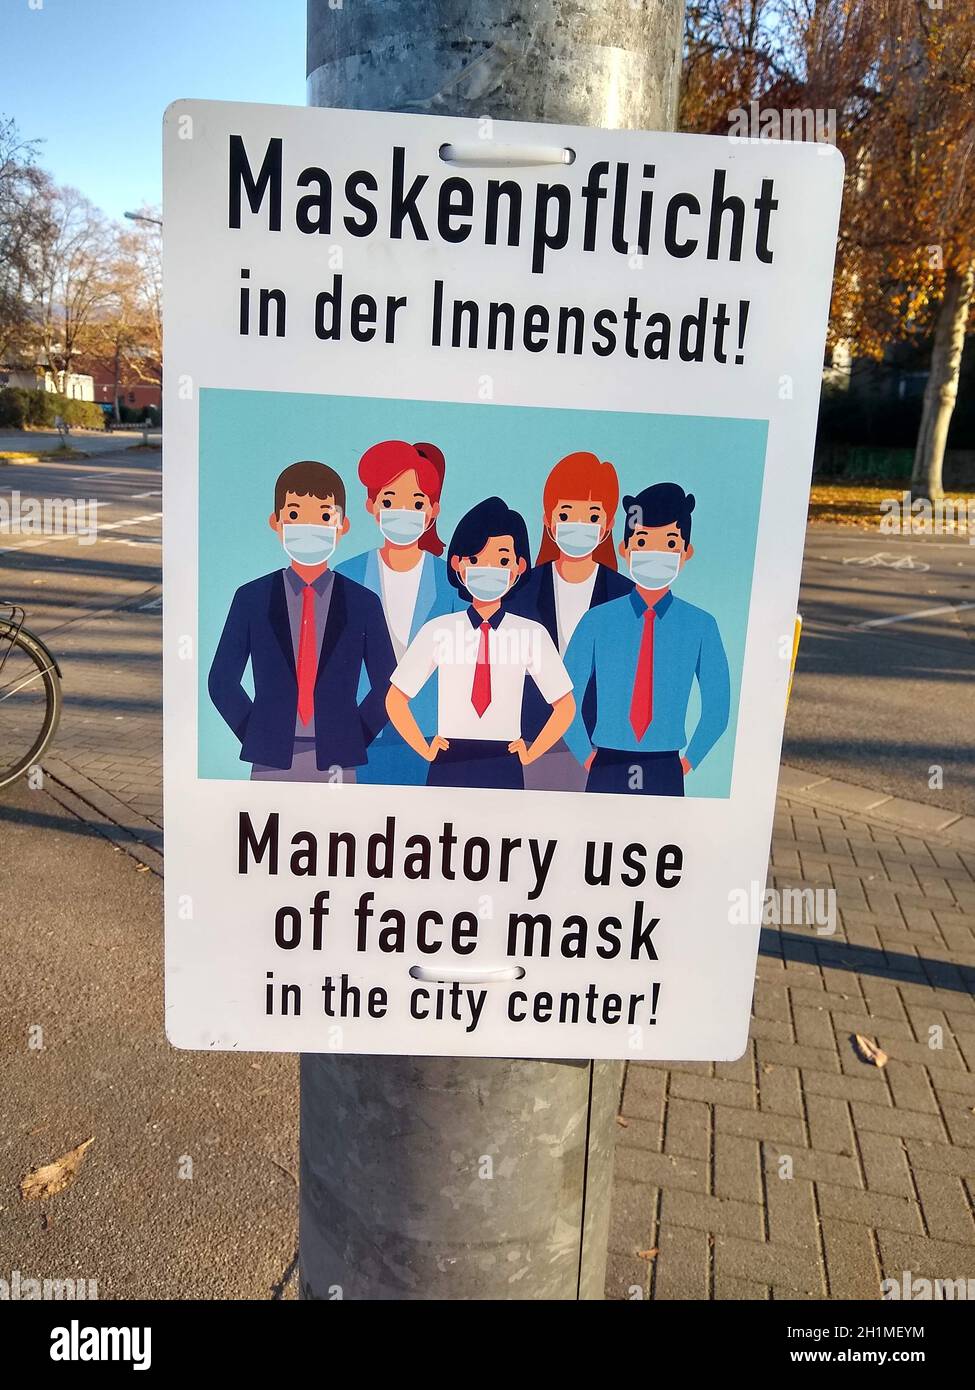 Maskenpflicht, wie hier in Freiburg besteht zwischenzeitlich in zahlreichen Städten in Deutschland  Themenbild Medizin  - Coronavirus Stock Photo